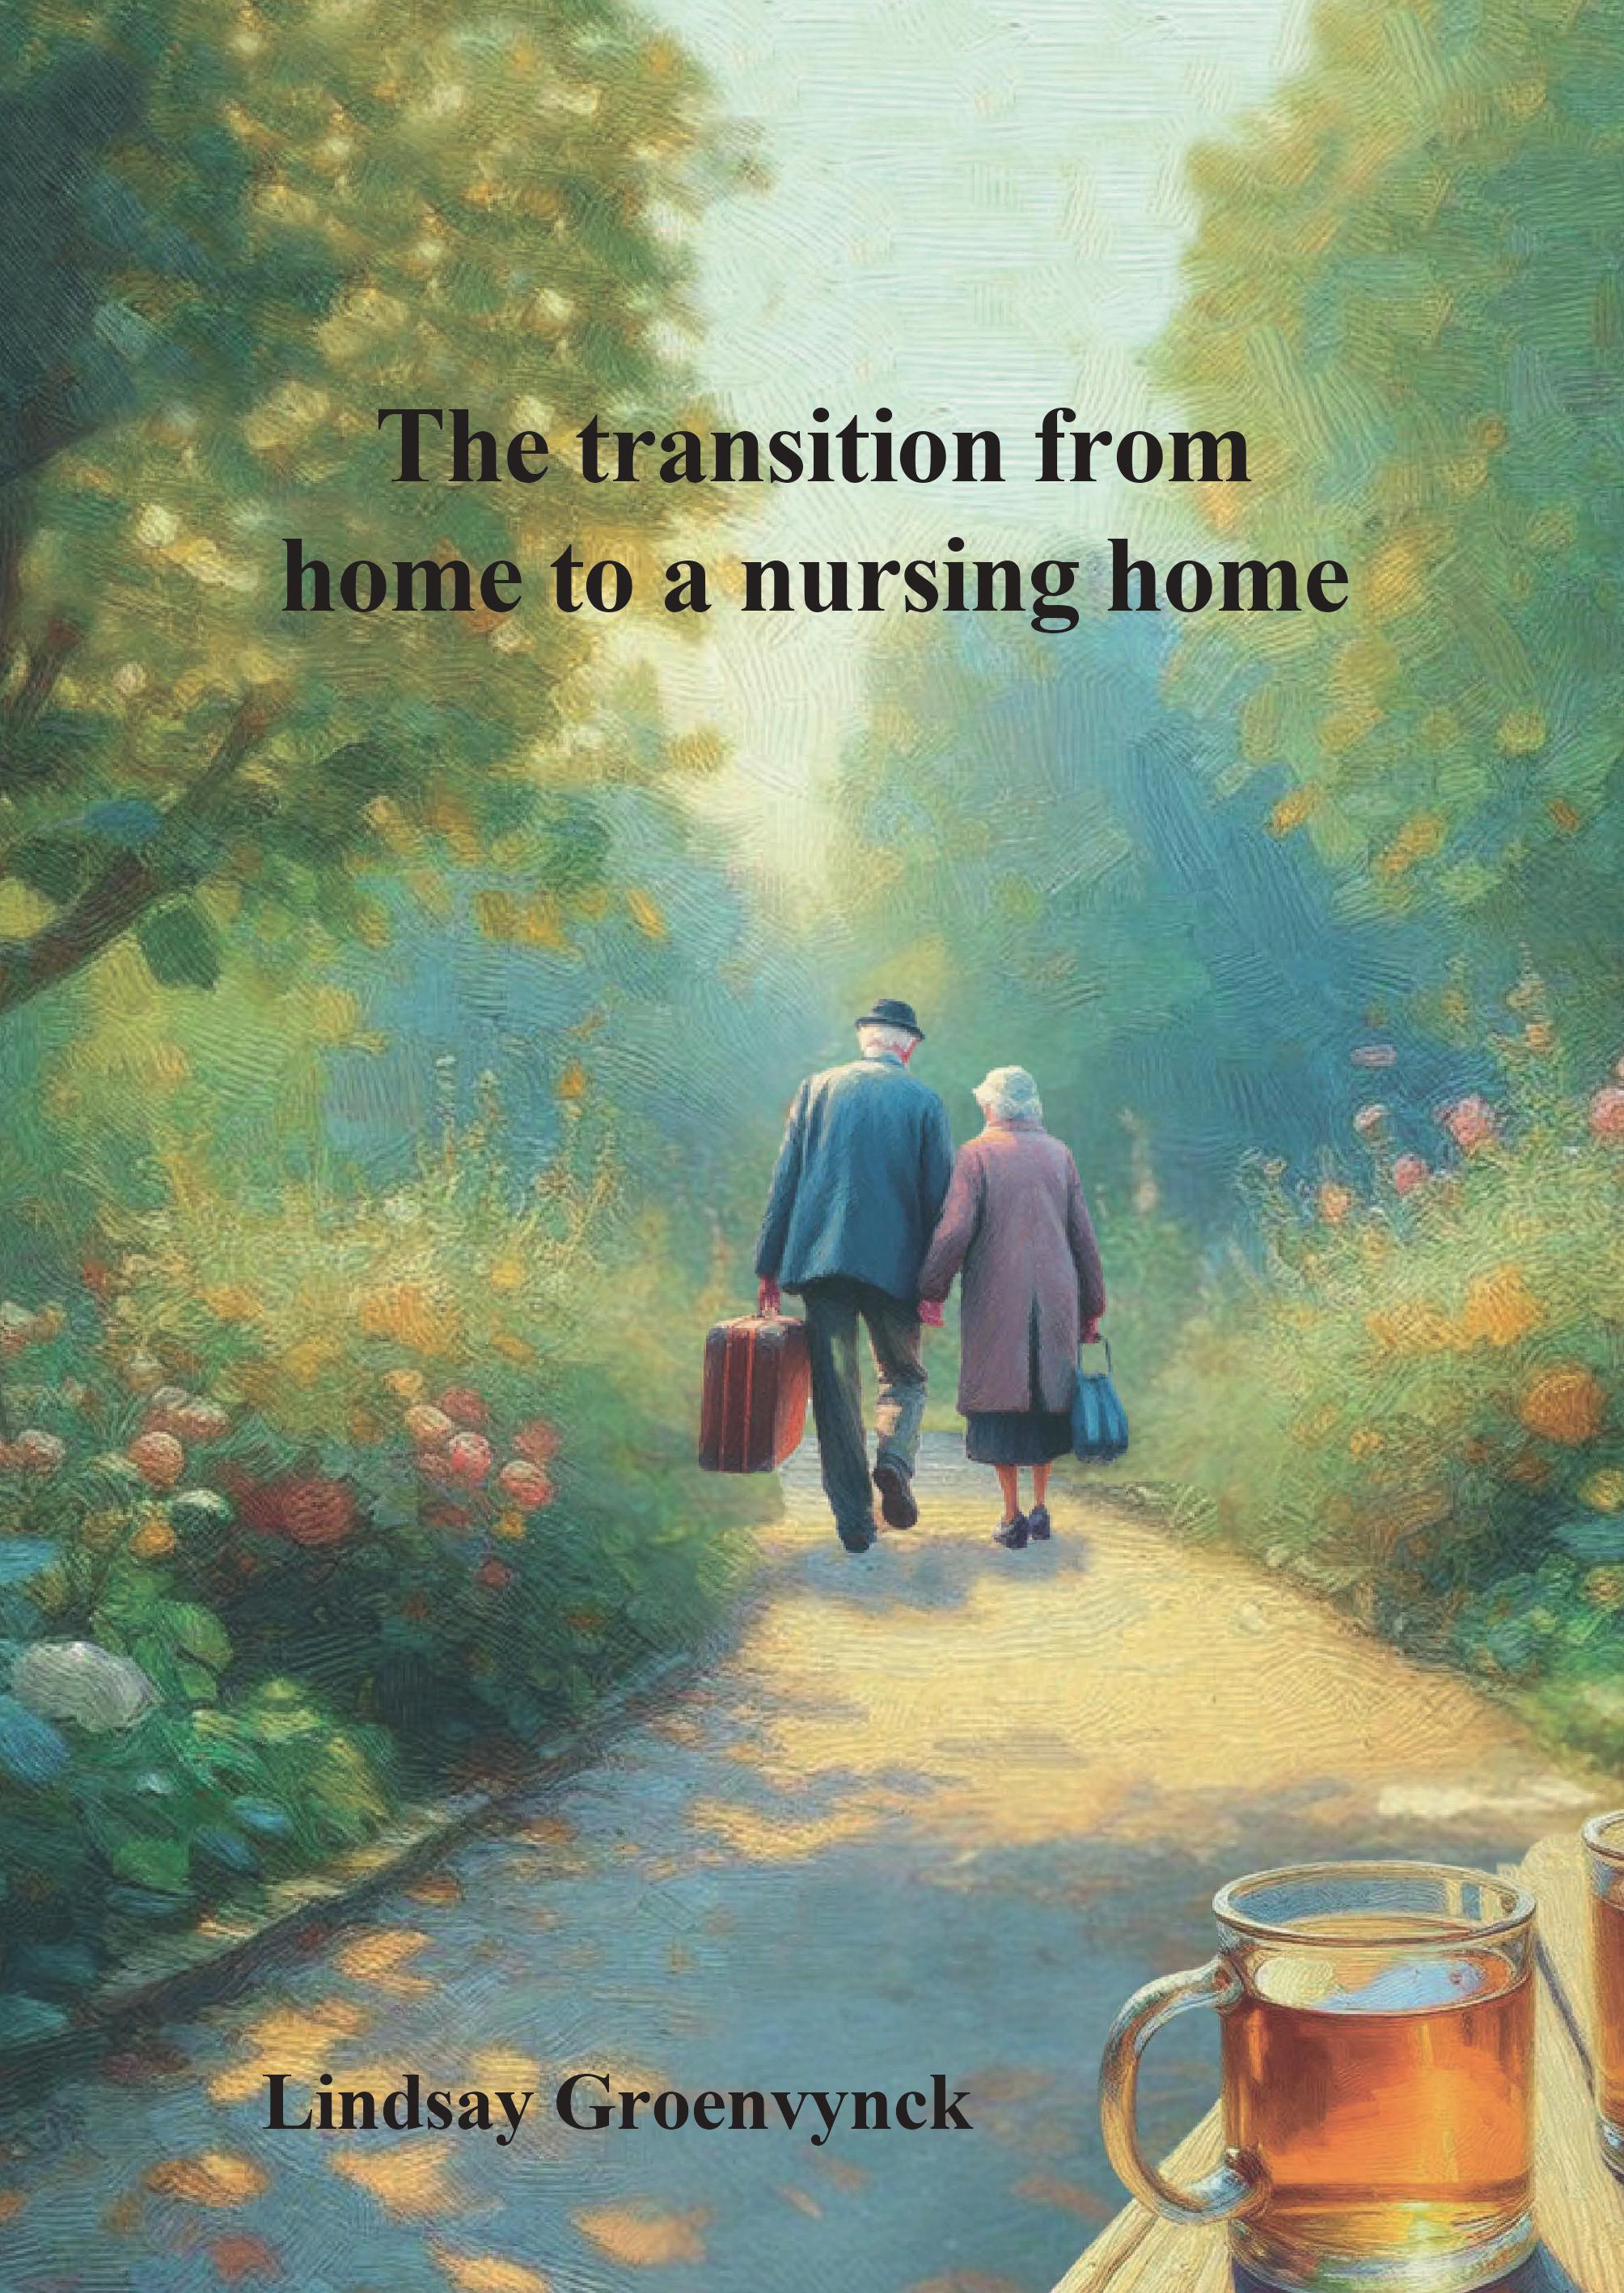 Noodzaak voor geleidelijke overgang van thuis naar verpleeghuis voor ouderen met dementie